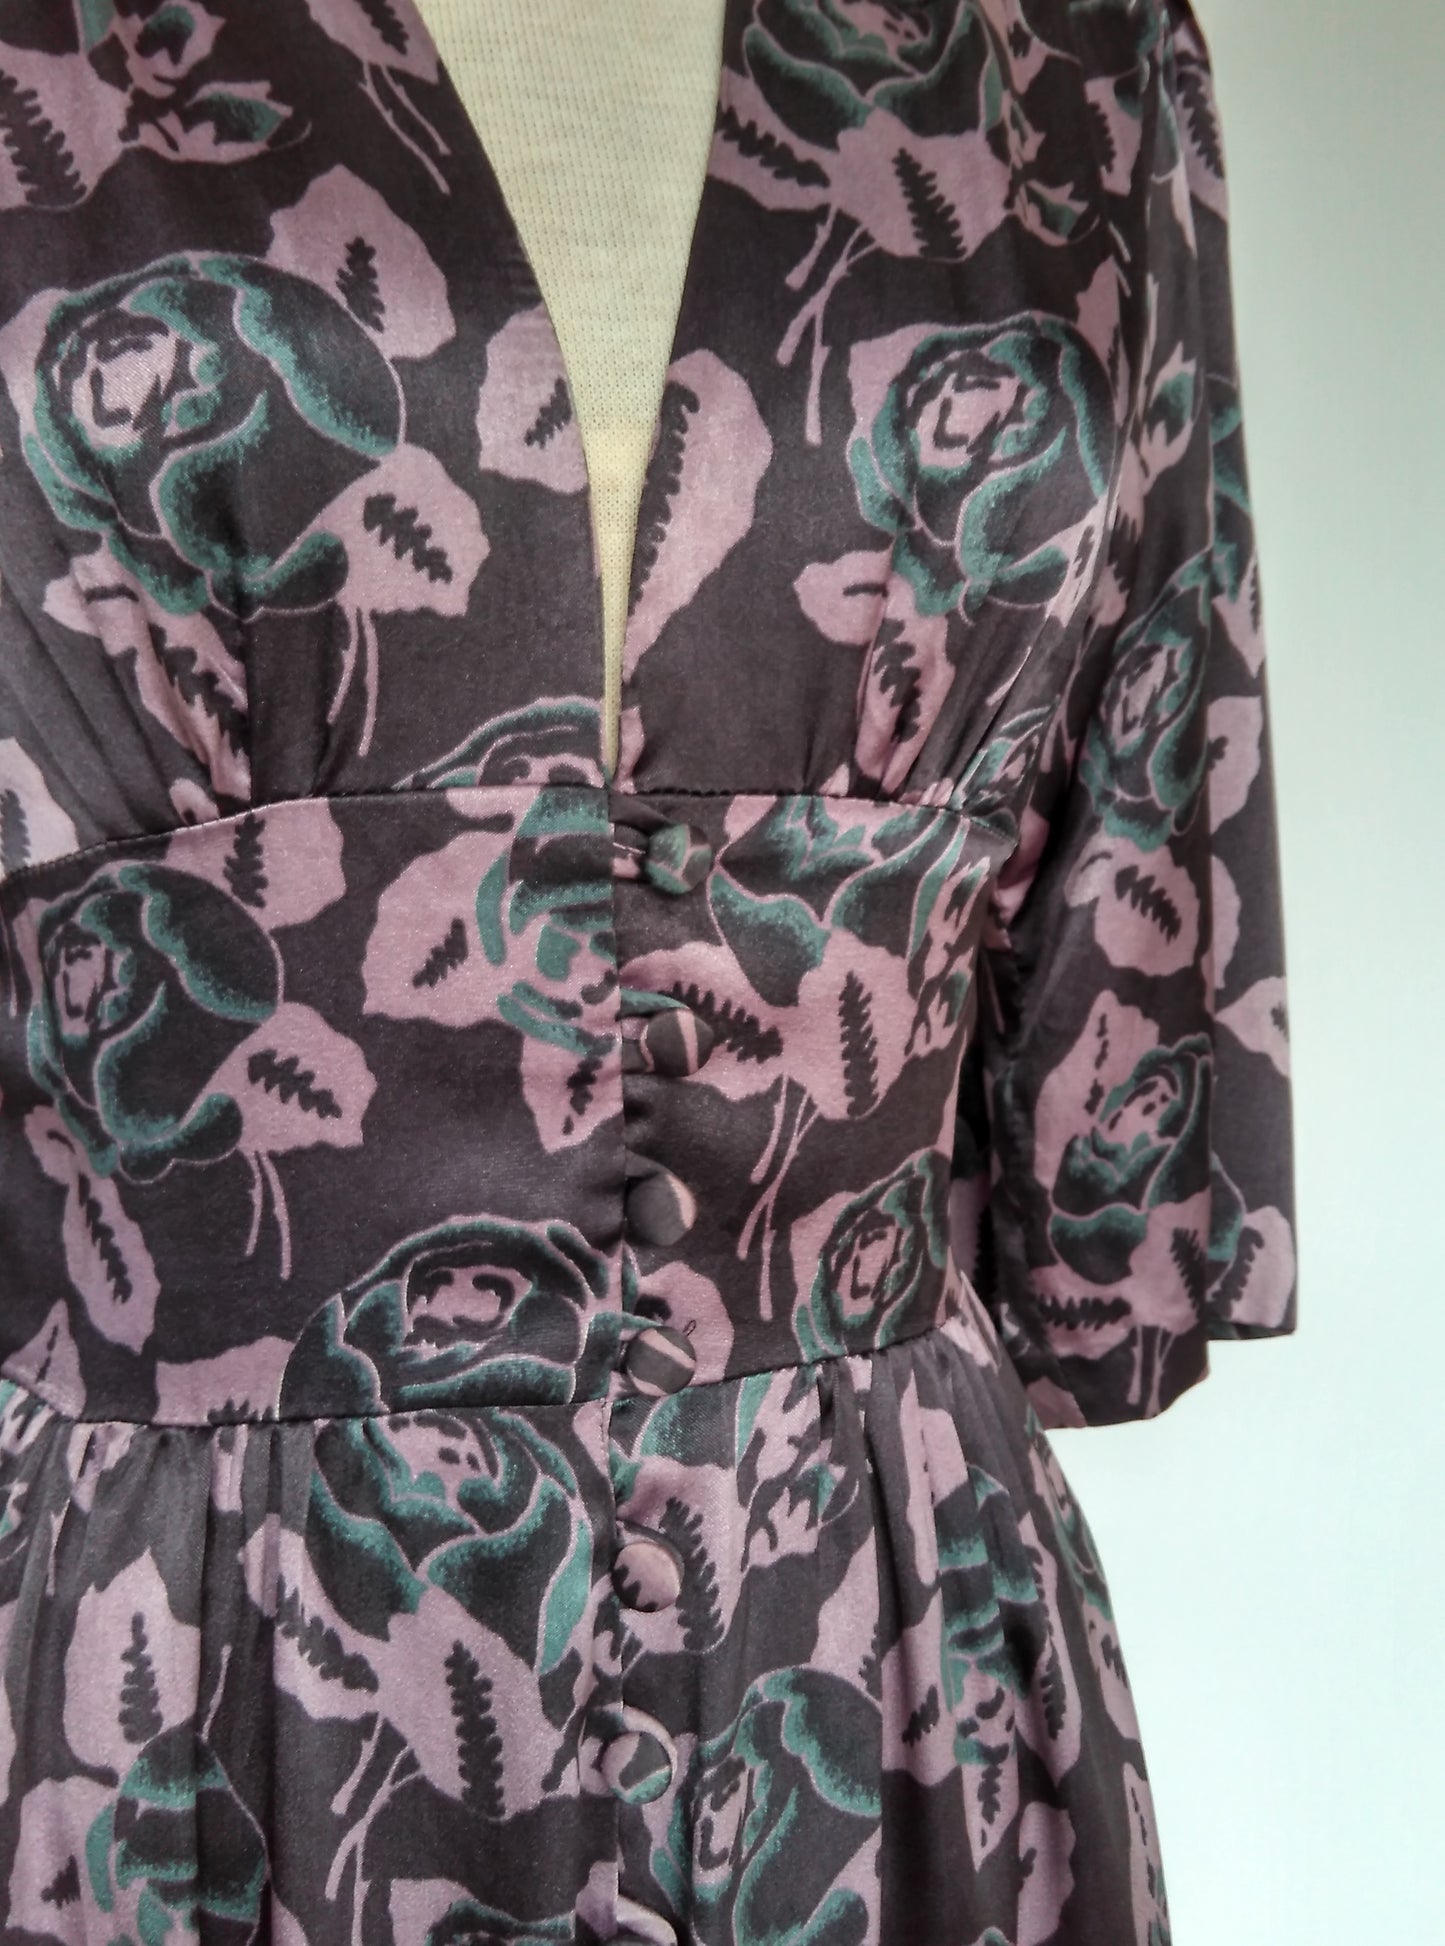 Floral 1970s dress